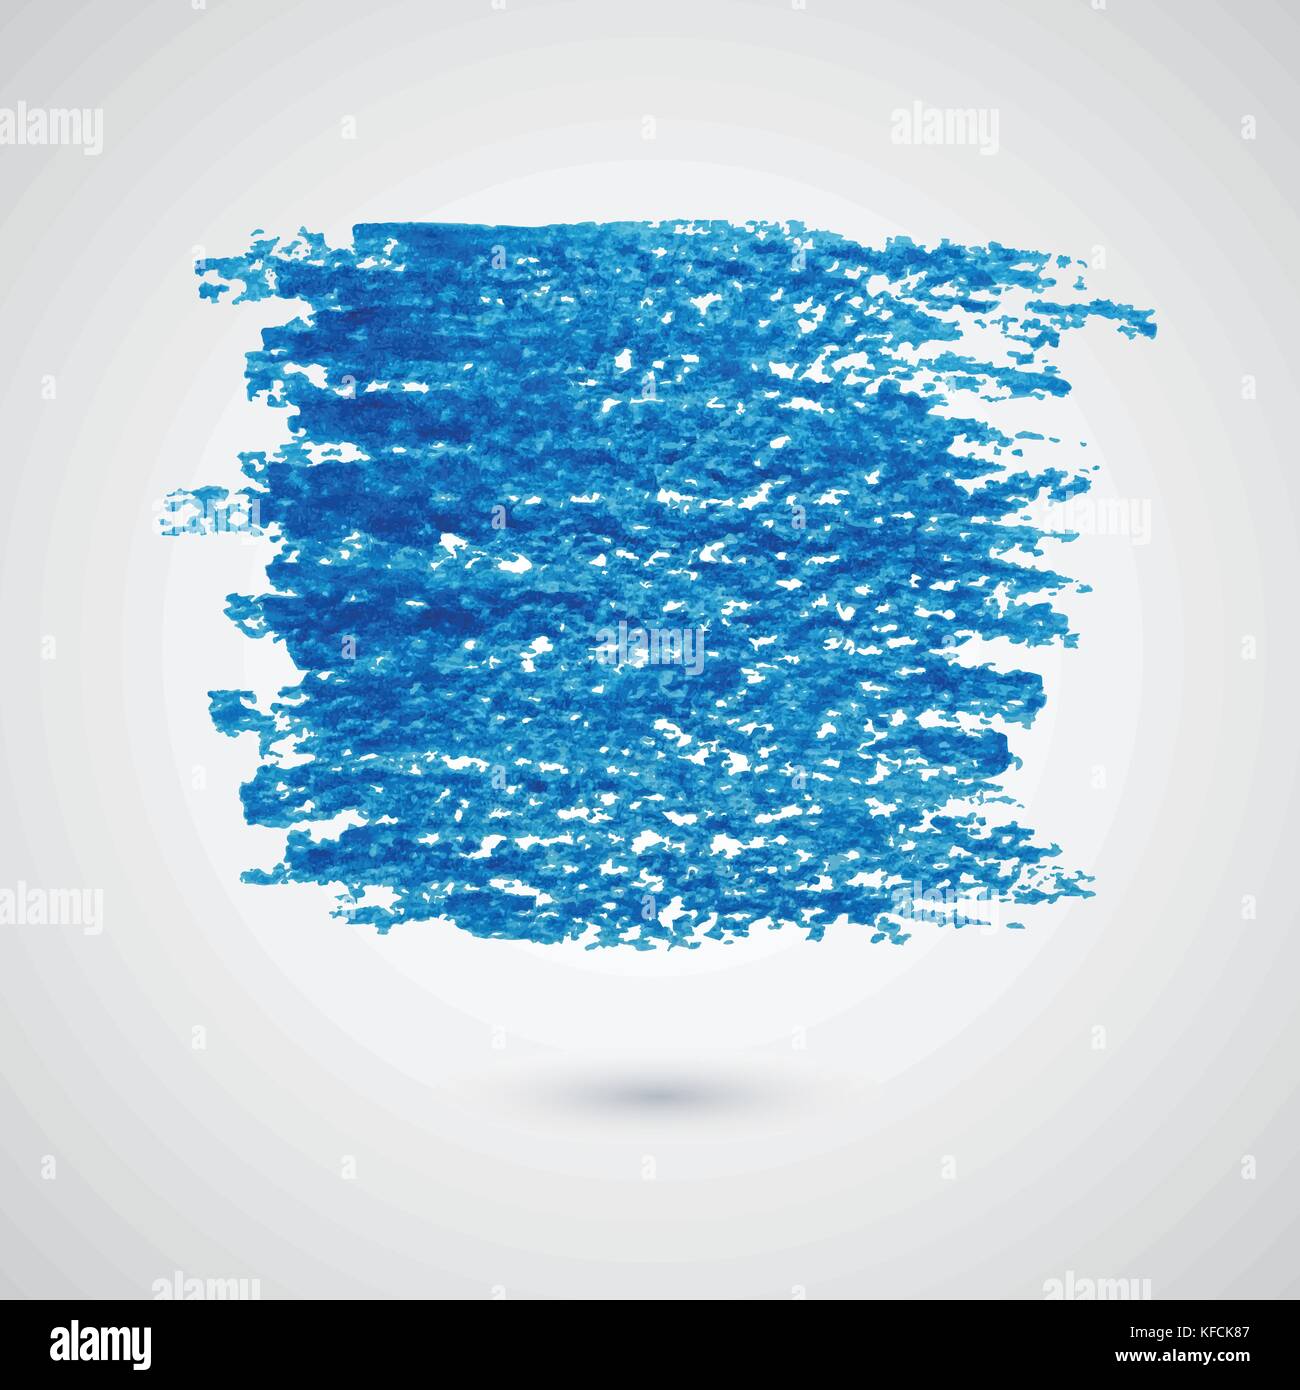 Vektor Zusammenfassung Hintergrund mit blauen Filzstift banner Anschläge Stock Vektor